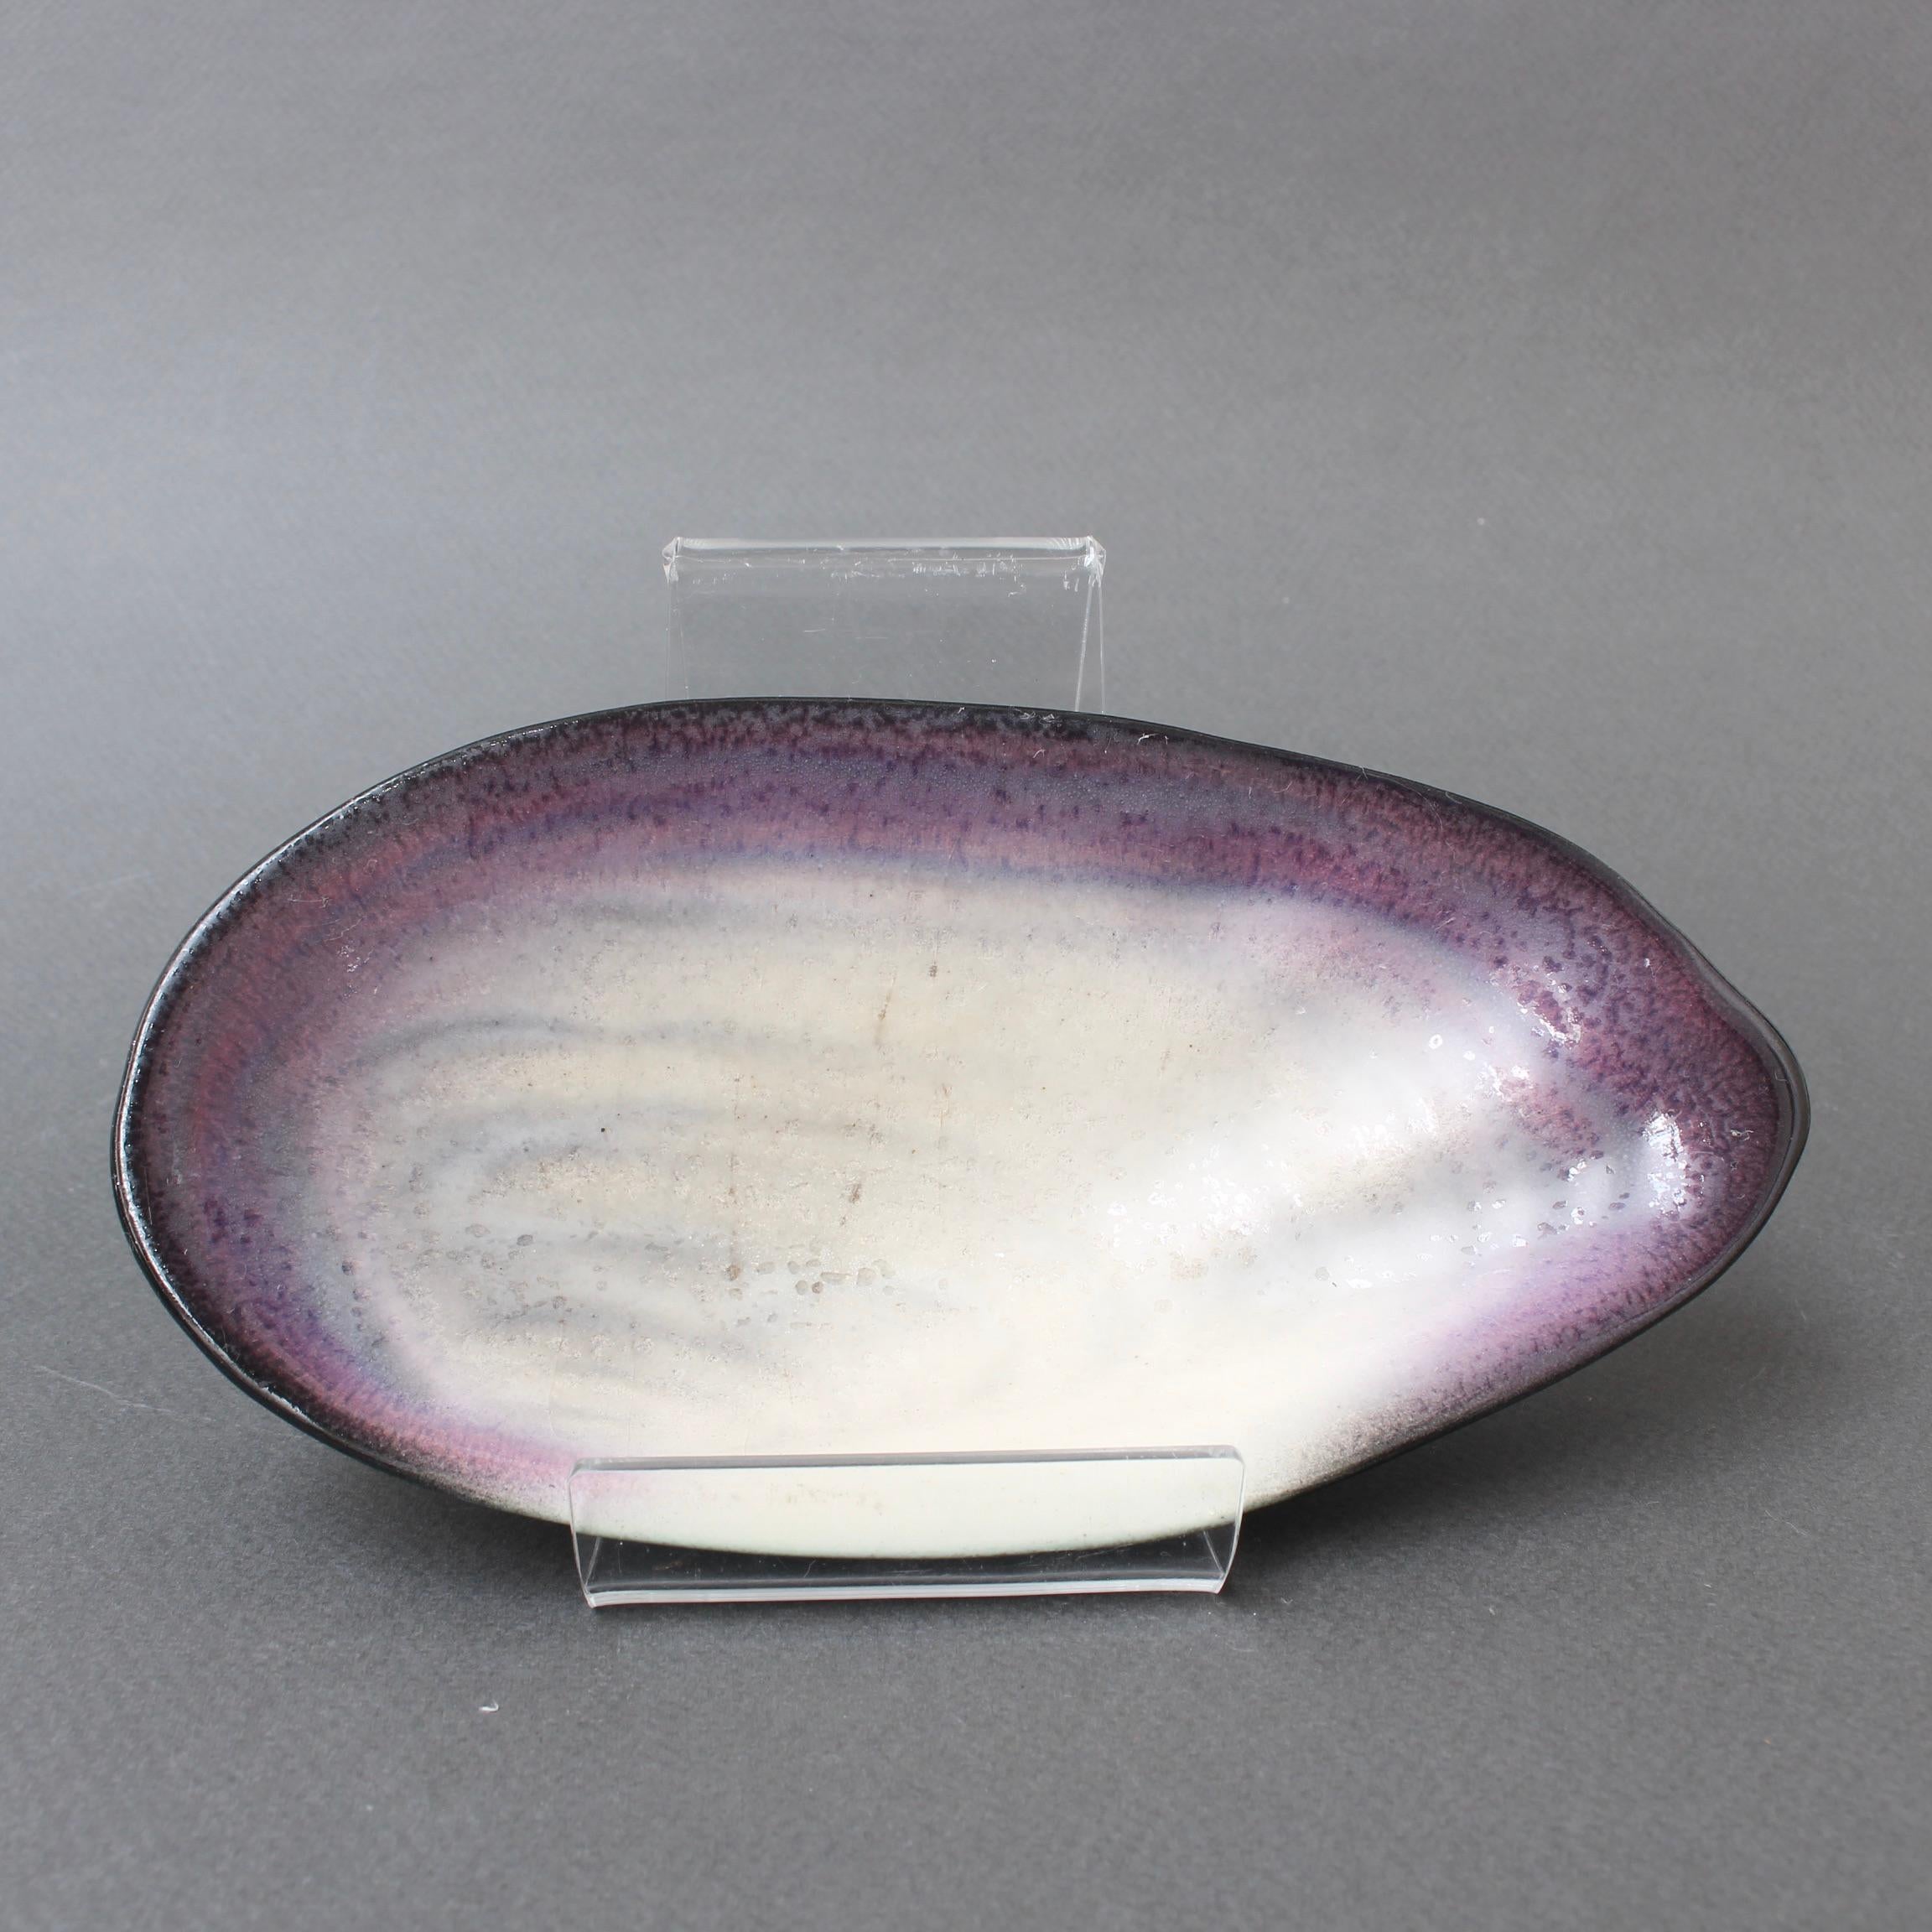 Dekorative Keramik-Videopoche von Pol Chambost (ca. 1950er Jahre). Kleine, aber elegante Muschelform mit weißer Basis und dunkler, traubenvioletter Kontur und Lippe. Außerhalb des Zentrums ist die Form in einem raffinierten, matten Schwarz gefärbt,